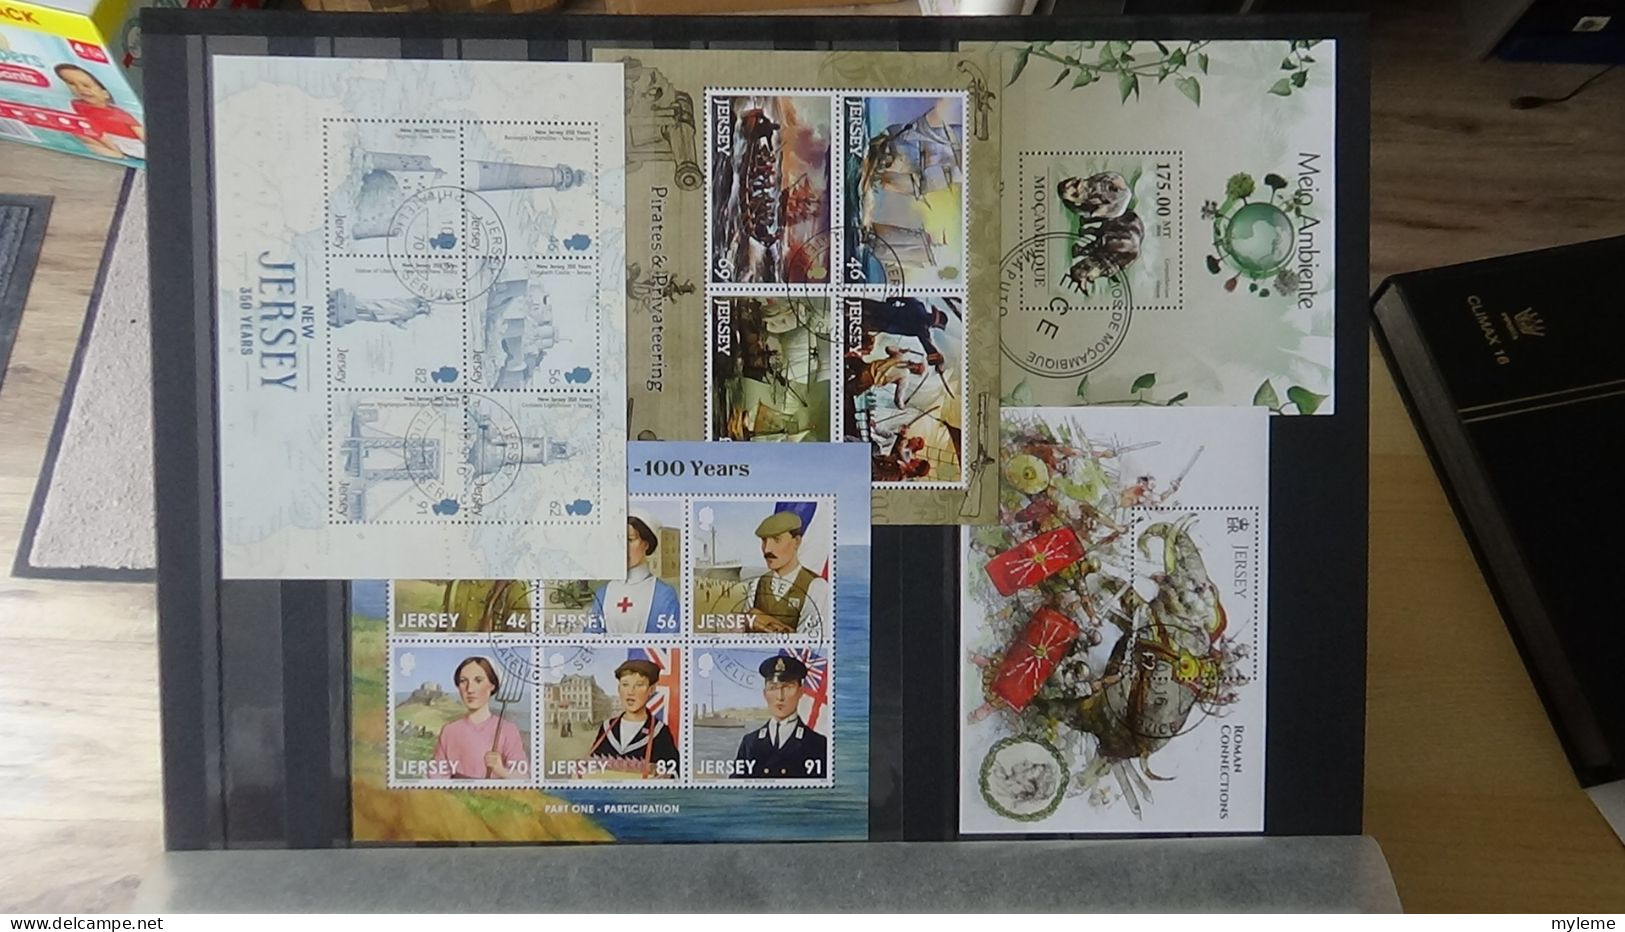 BF52 Bel ensemble de timbres et blocs oblitérés de divers pays Idéal pour thématiques. A saisir !!!